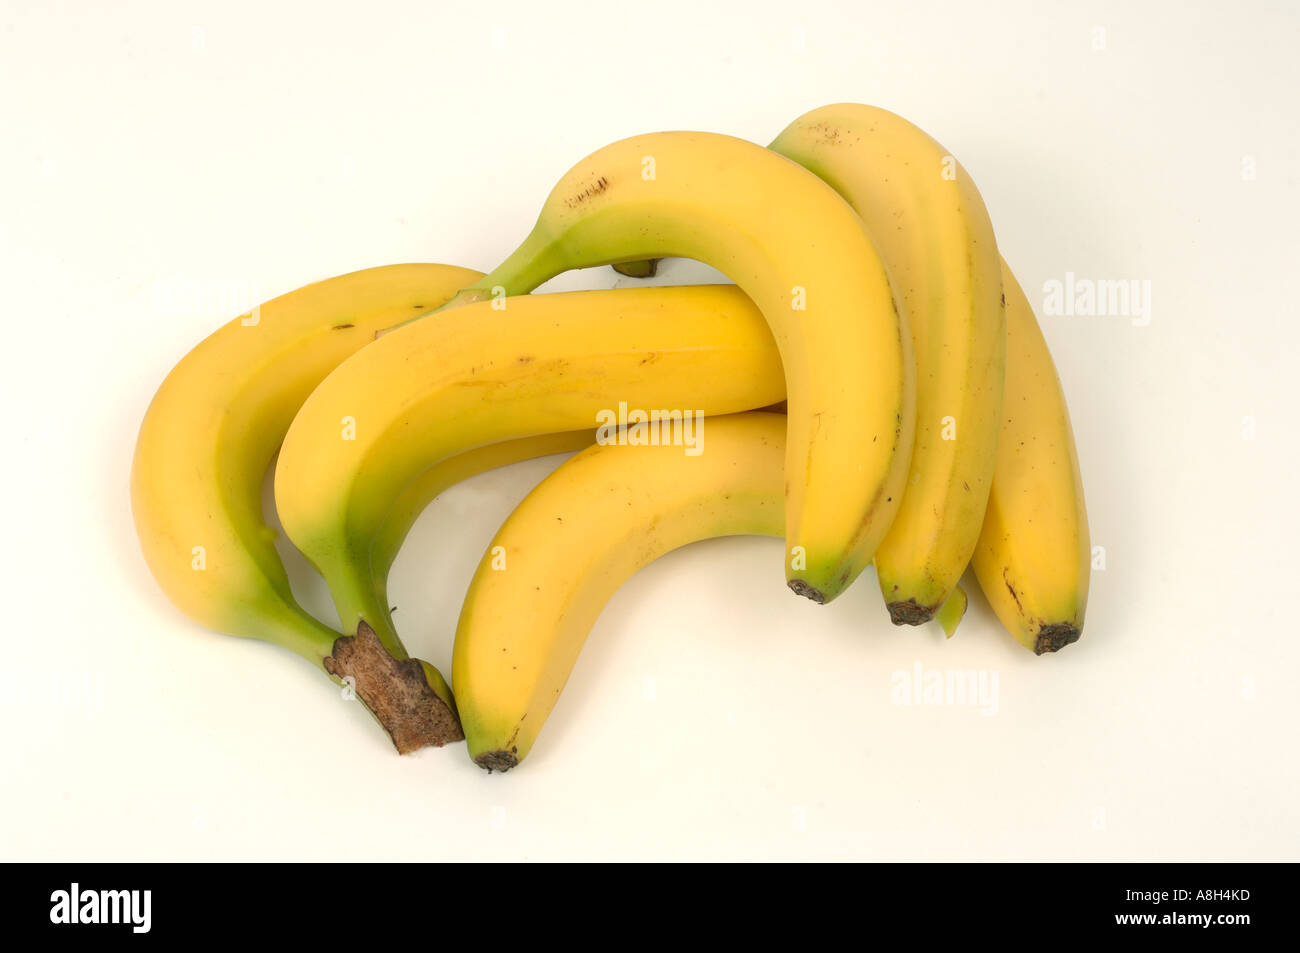 Bündel Bananen Supermarkt gekauft und in einem normalen Geschäft Zustand Stockfoto